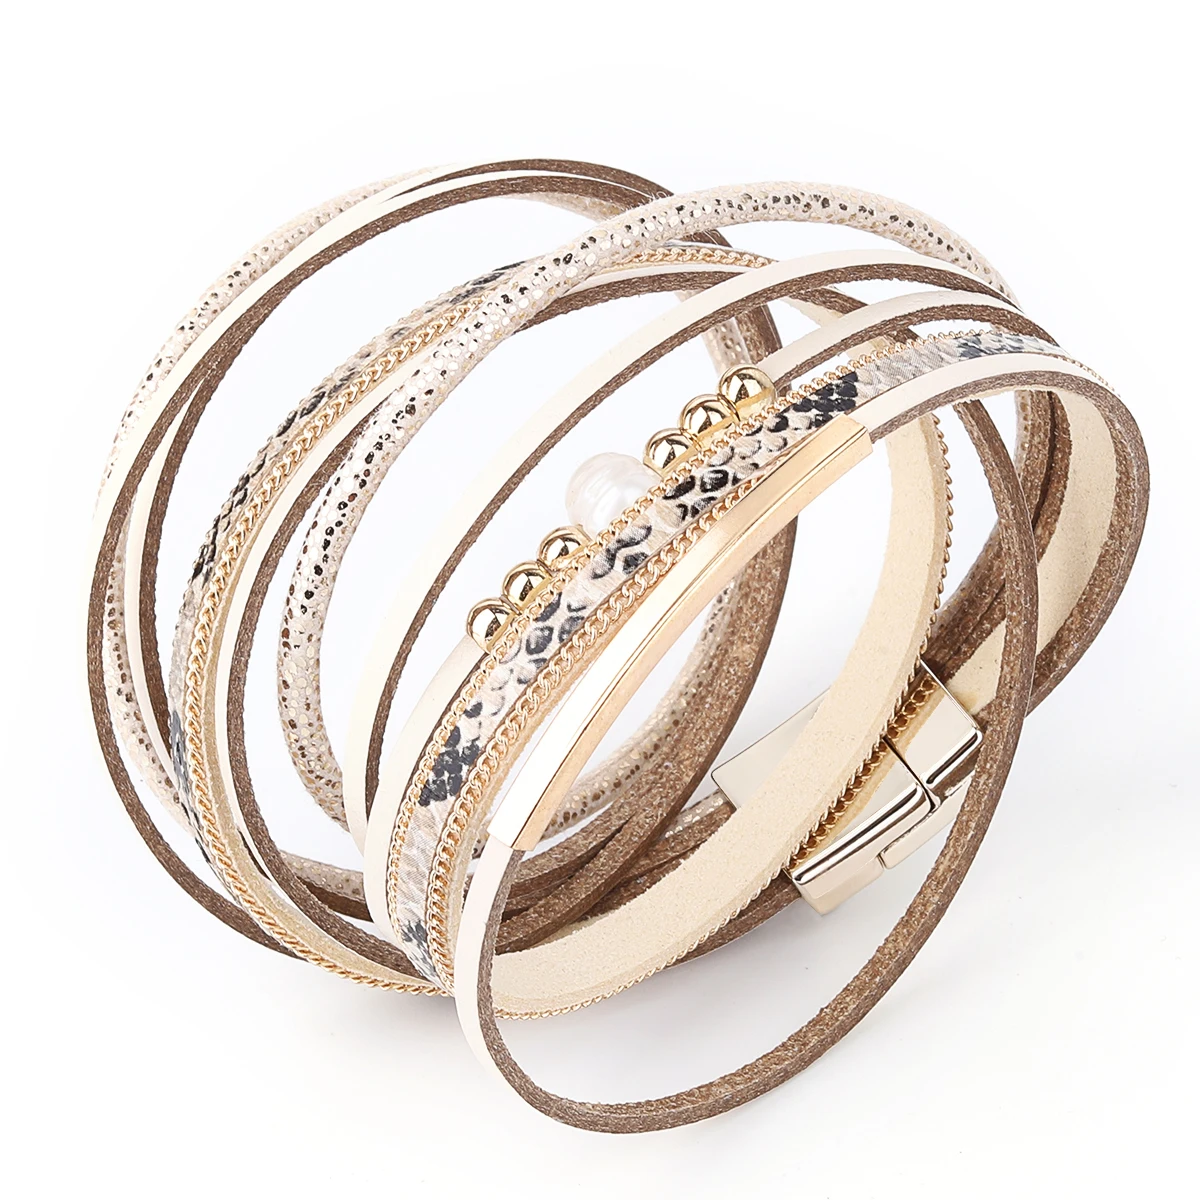 Модный Леопардовый кожаный браслет Имитация Жемчуга Кулон слои широкий обертывание браслет для ношения выше локтя и браслеты украшения подарки